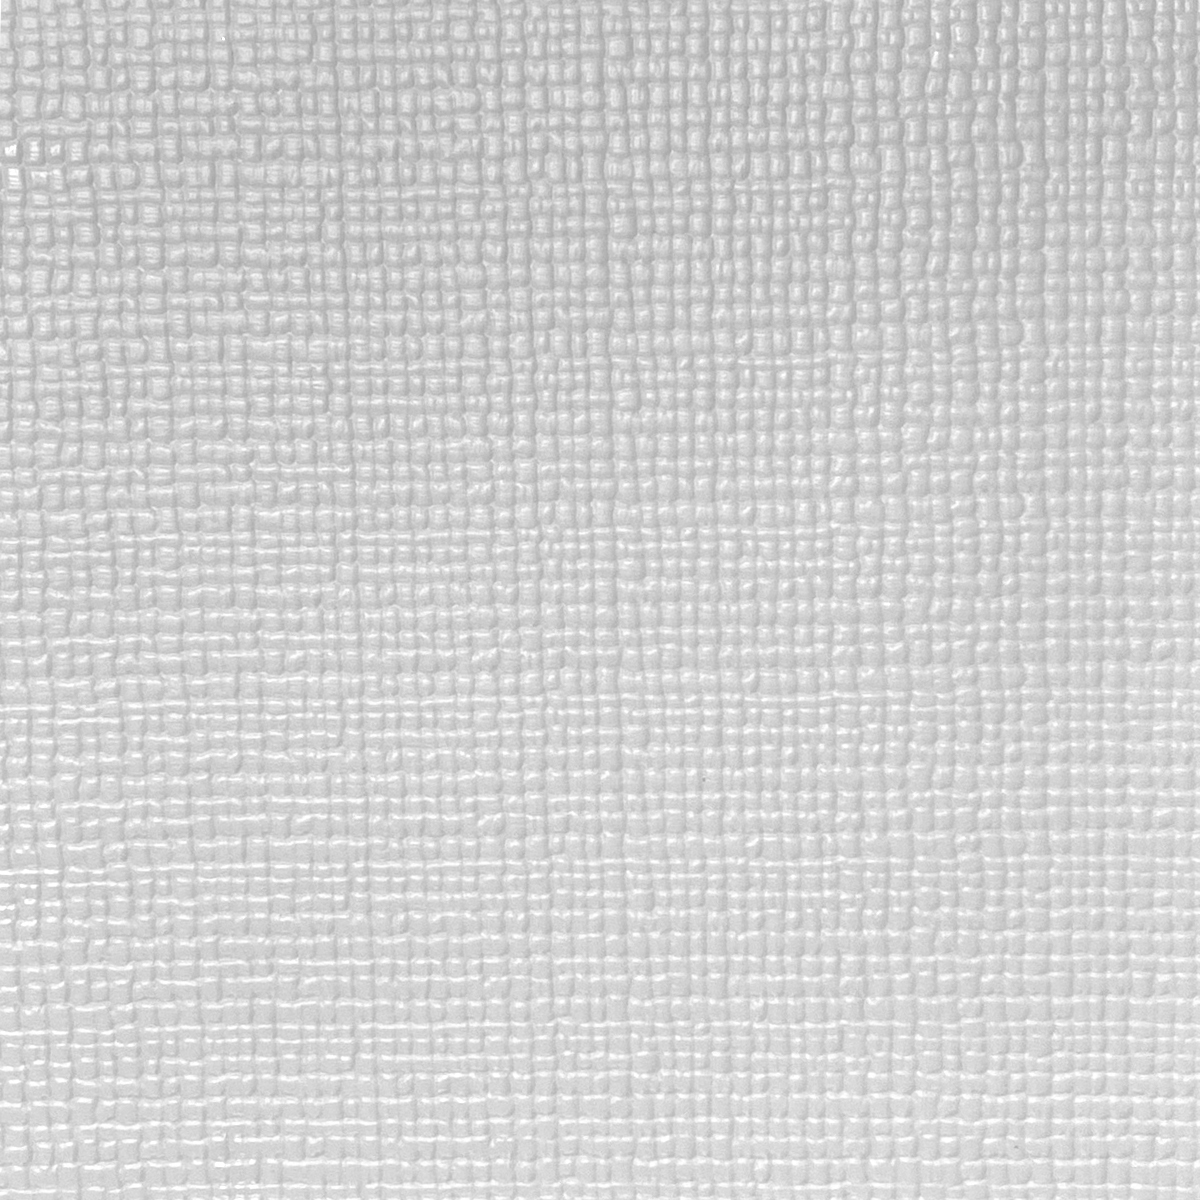 디자인스킨 셀프시공 롤매트 2m (110 x 200 x 1.6cm) - 베이직 그레이